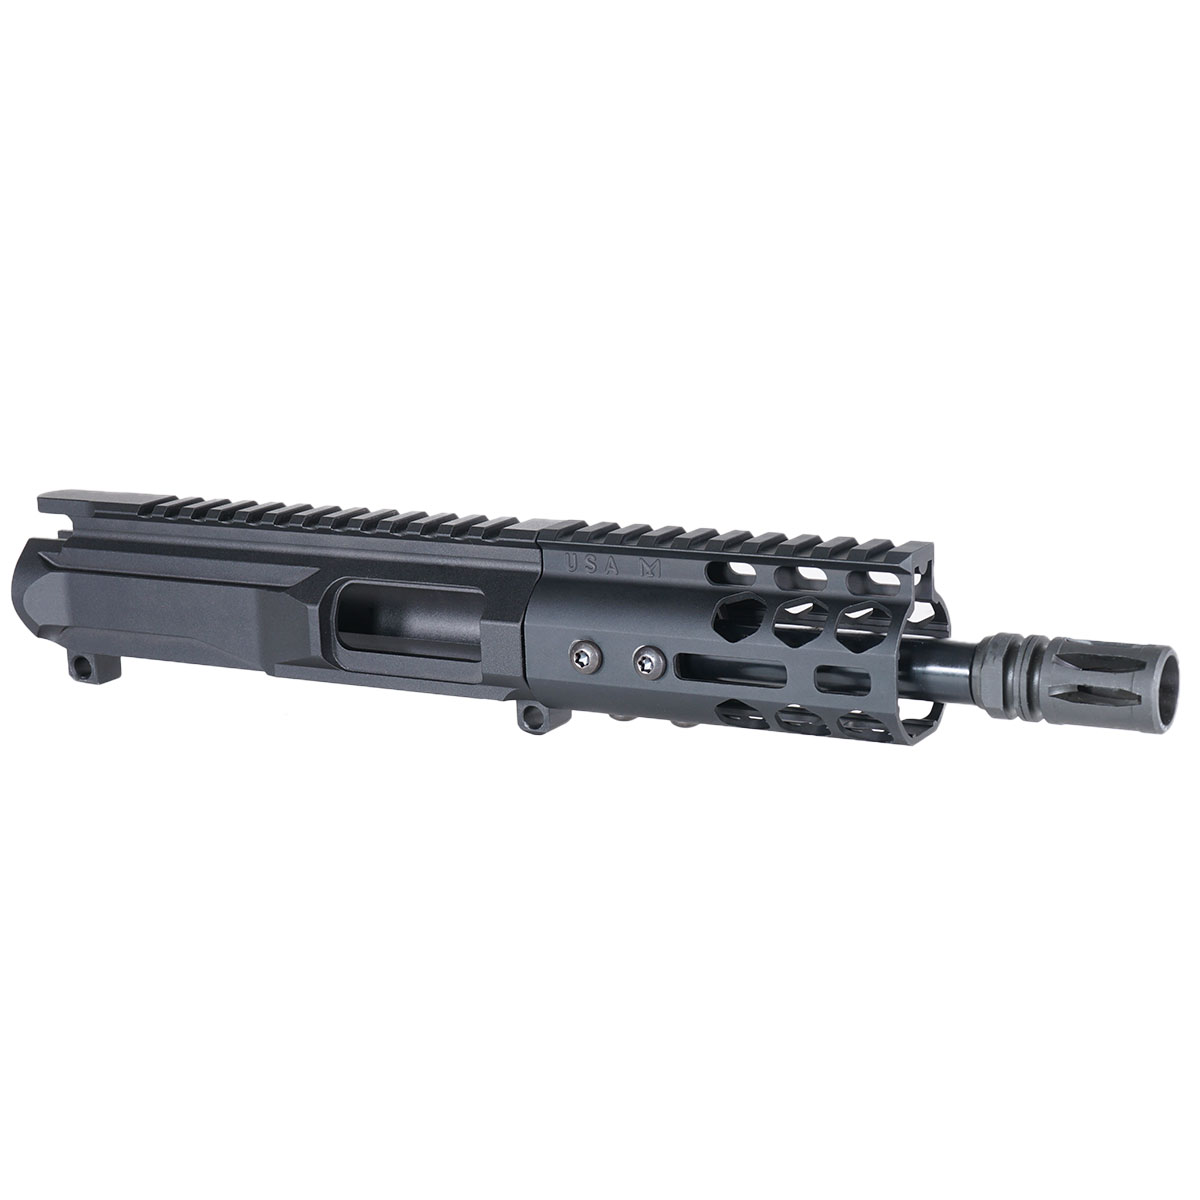 MMC 'Mockingbird Gen 3' 6-inch AR-15 9mm Nitride Pistol Upper Build Kit